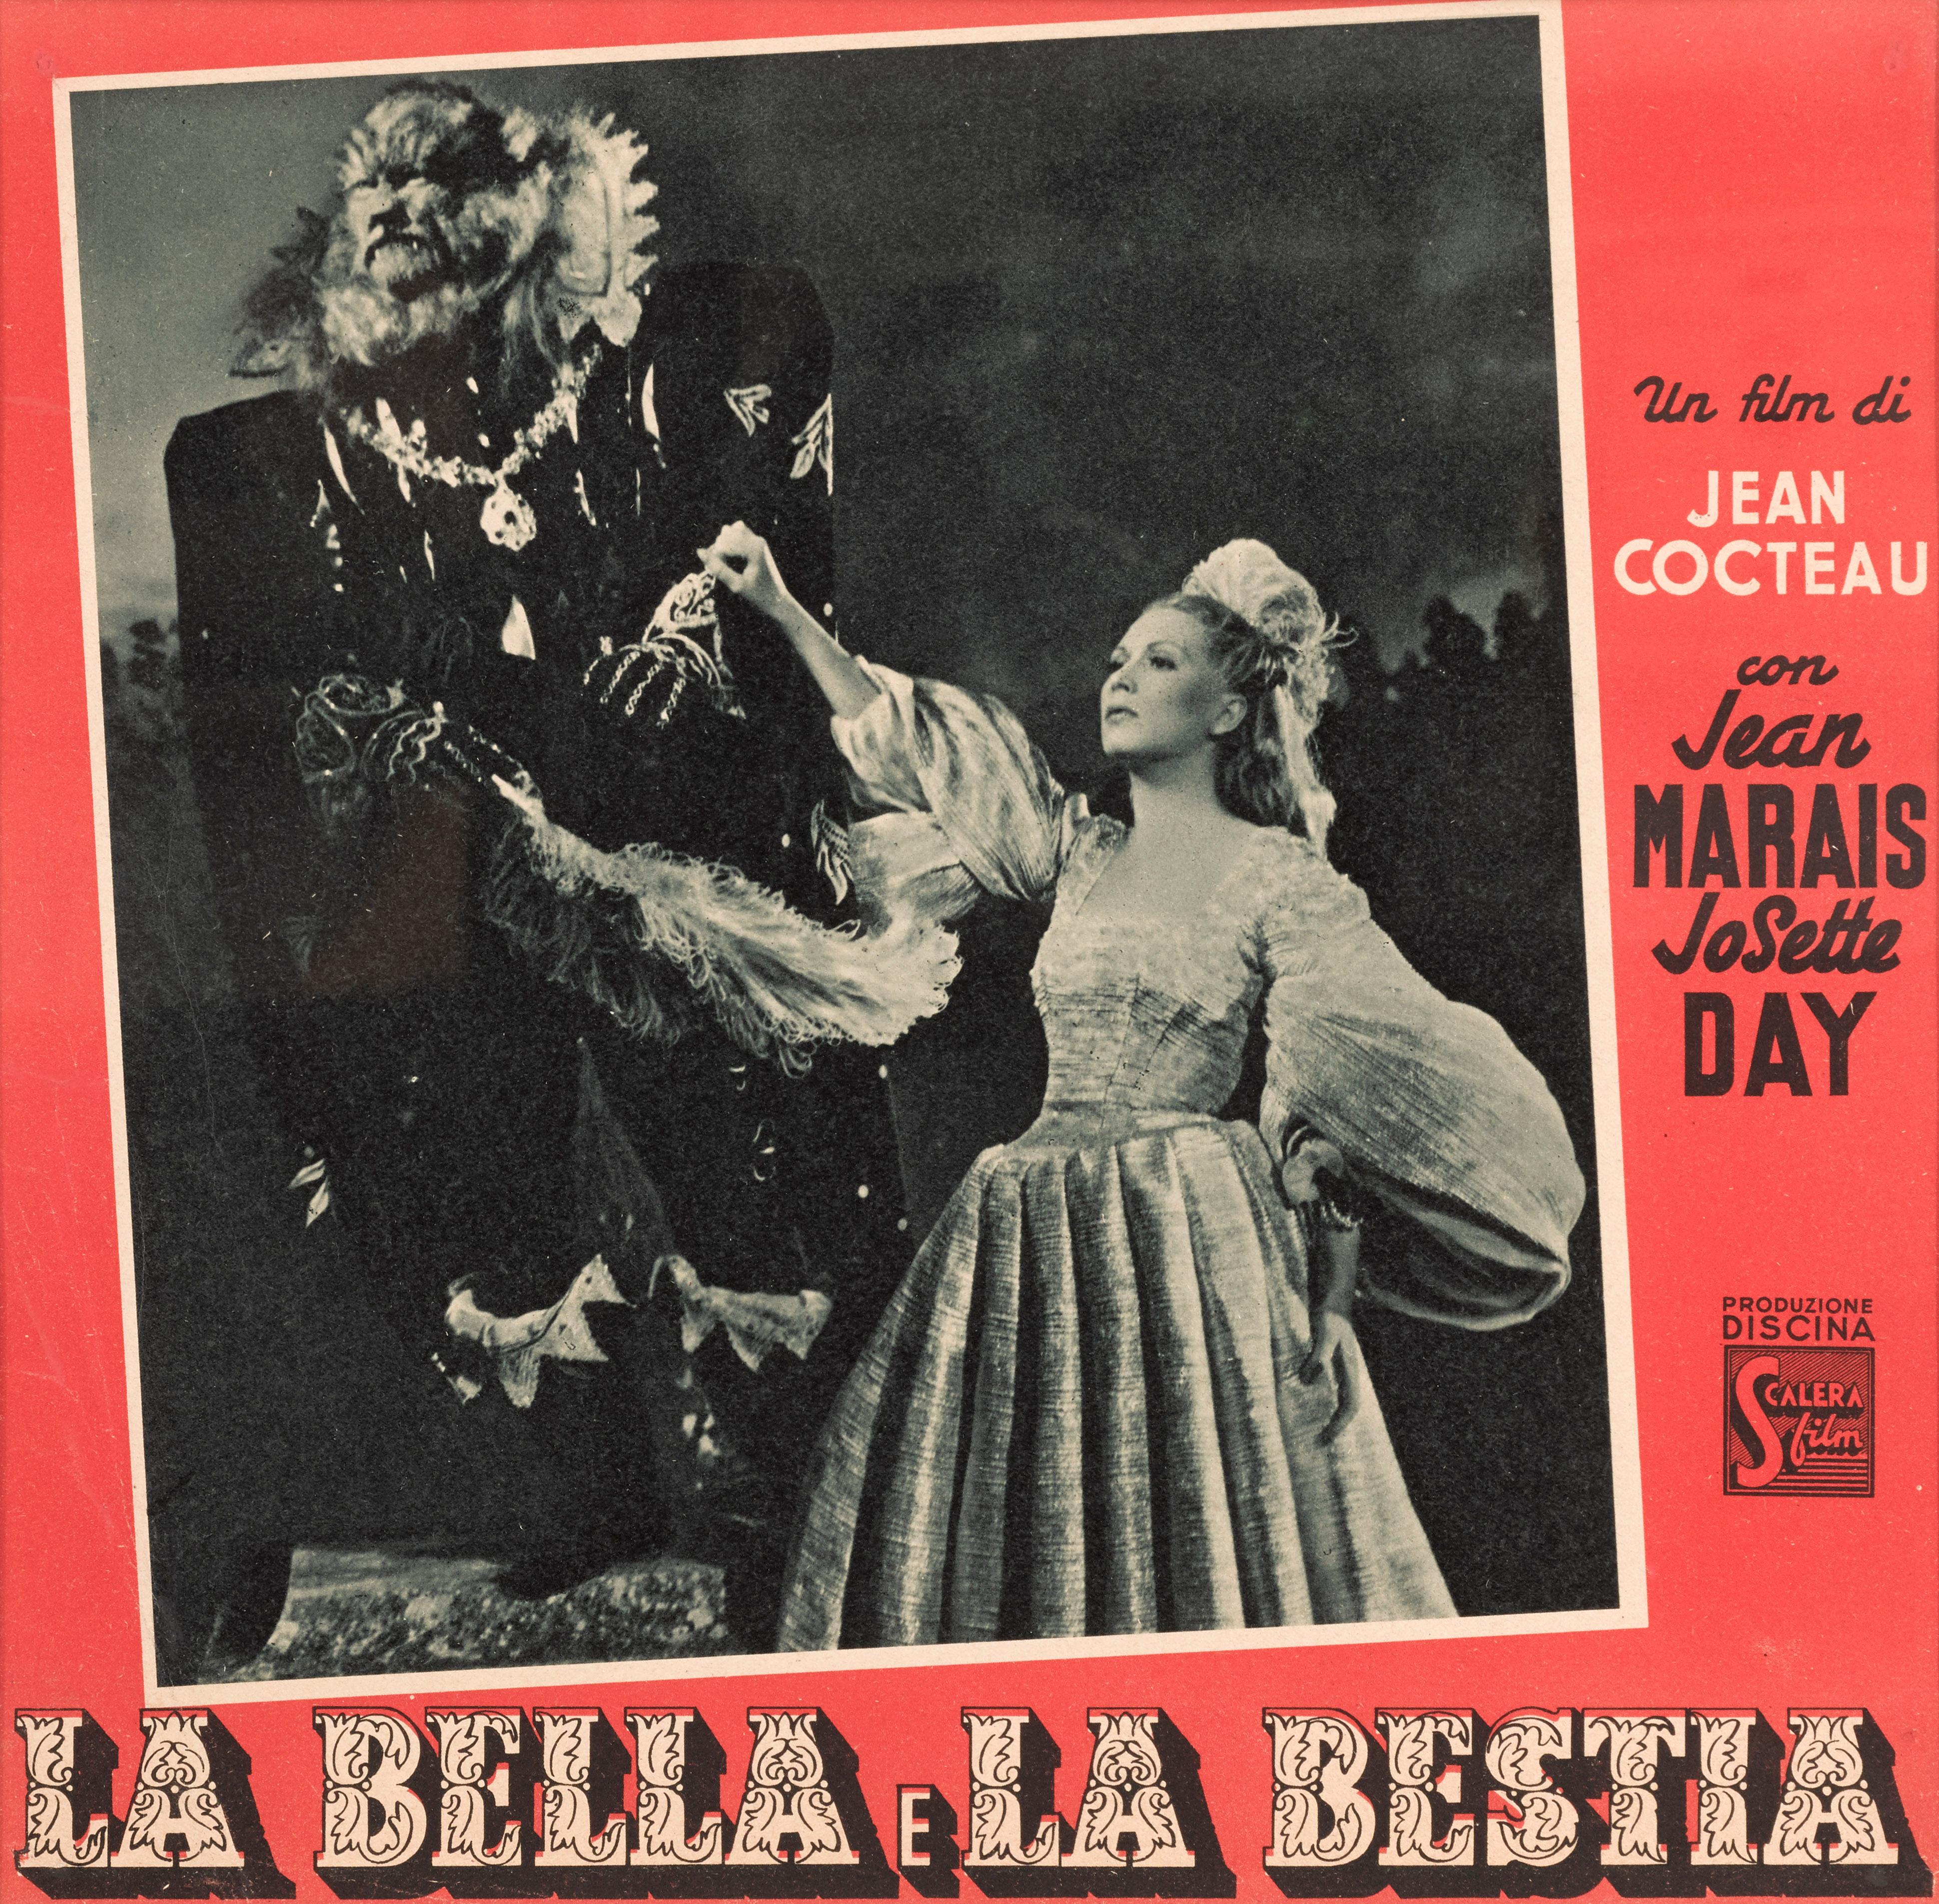 Carte de visite italienne originale du film fantastique classique de 1946.
Le film a eu sa première sortie italienne un an plus tard, en 1947.
Le roman de Gabrielle-Suzanne Barbot de Villeneuve, La Belle et la Bête, a été publié en France en 1740.